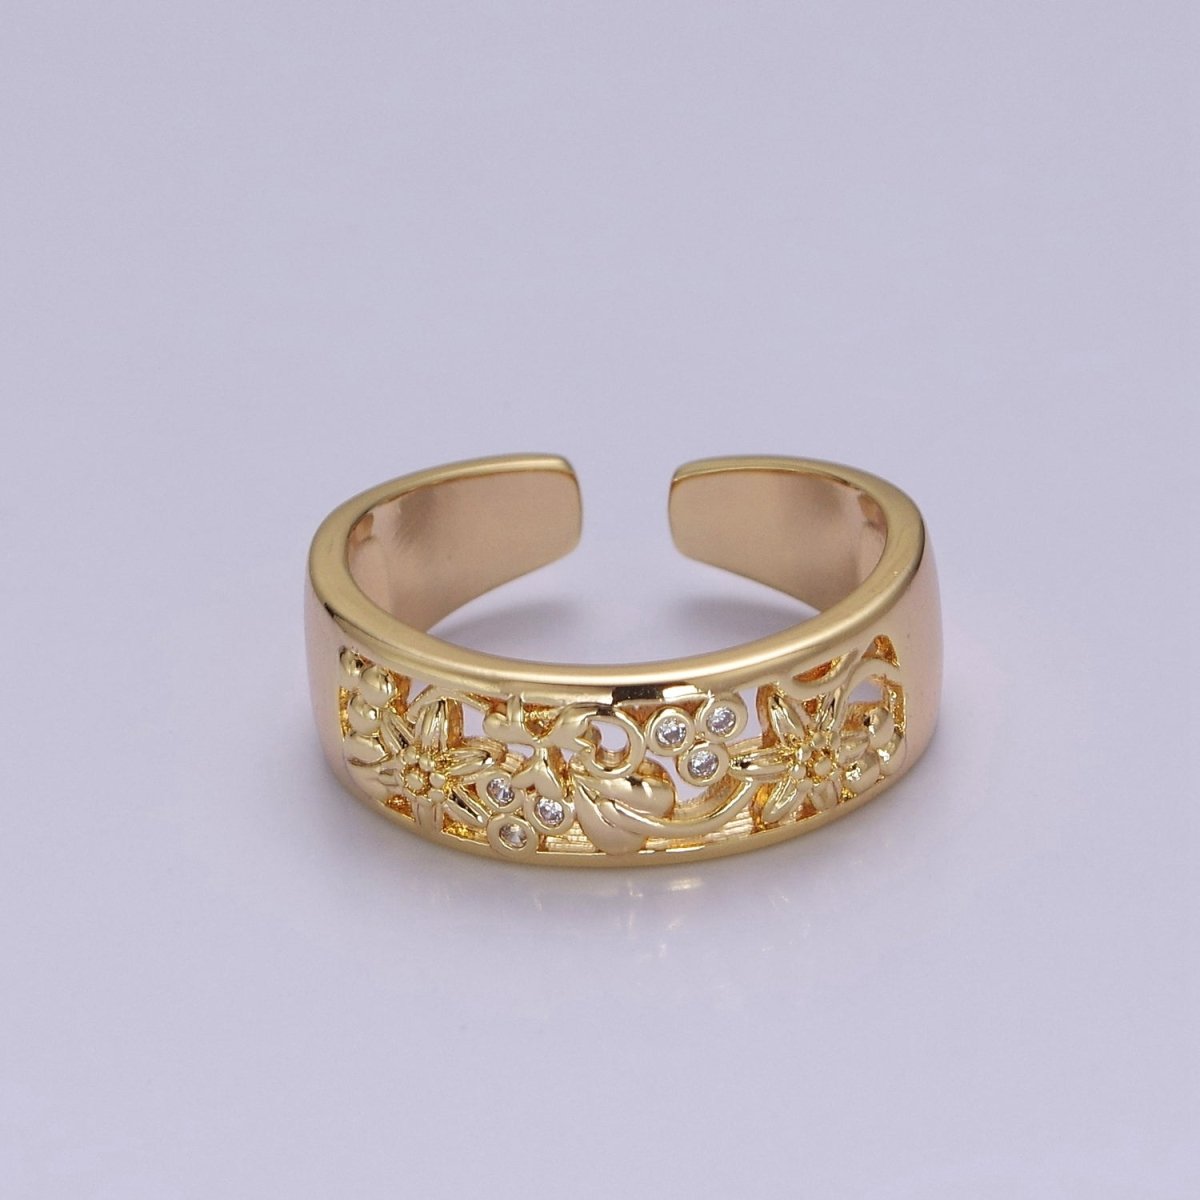 Dainty Art Deco Ring Flower Carved Design 18k Gold Filled Open Adjustable Ring O-2078 - DLUXCA